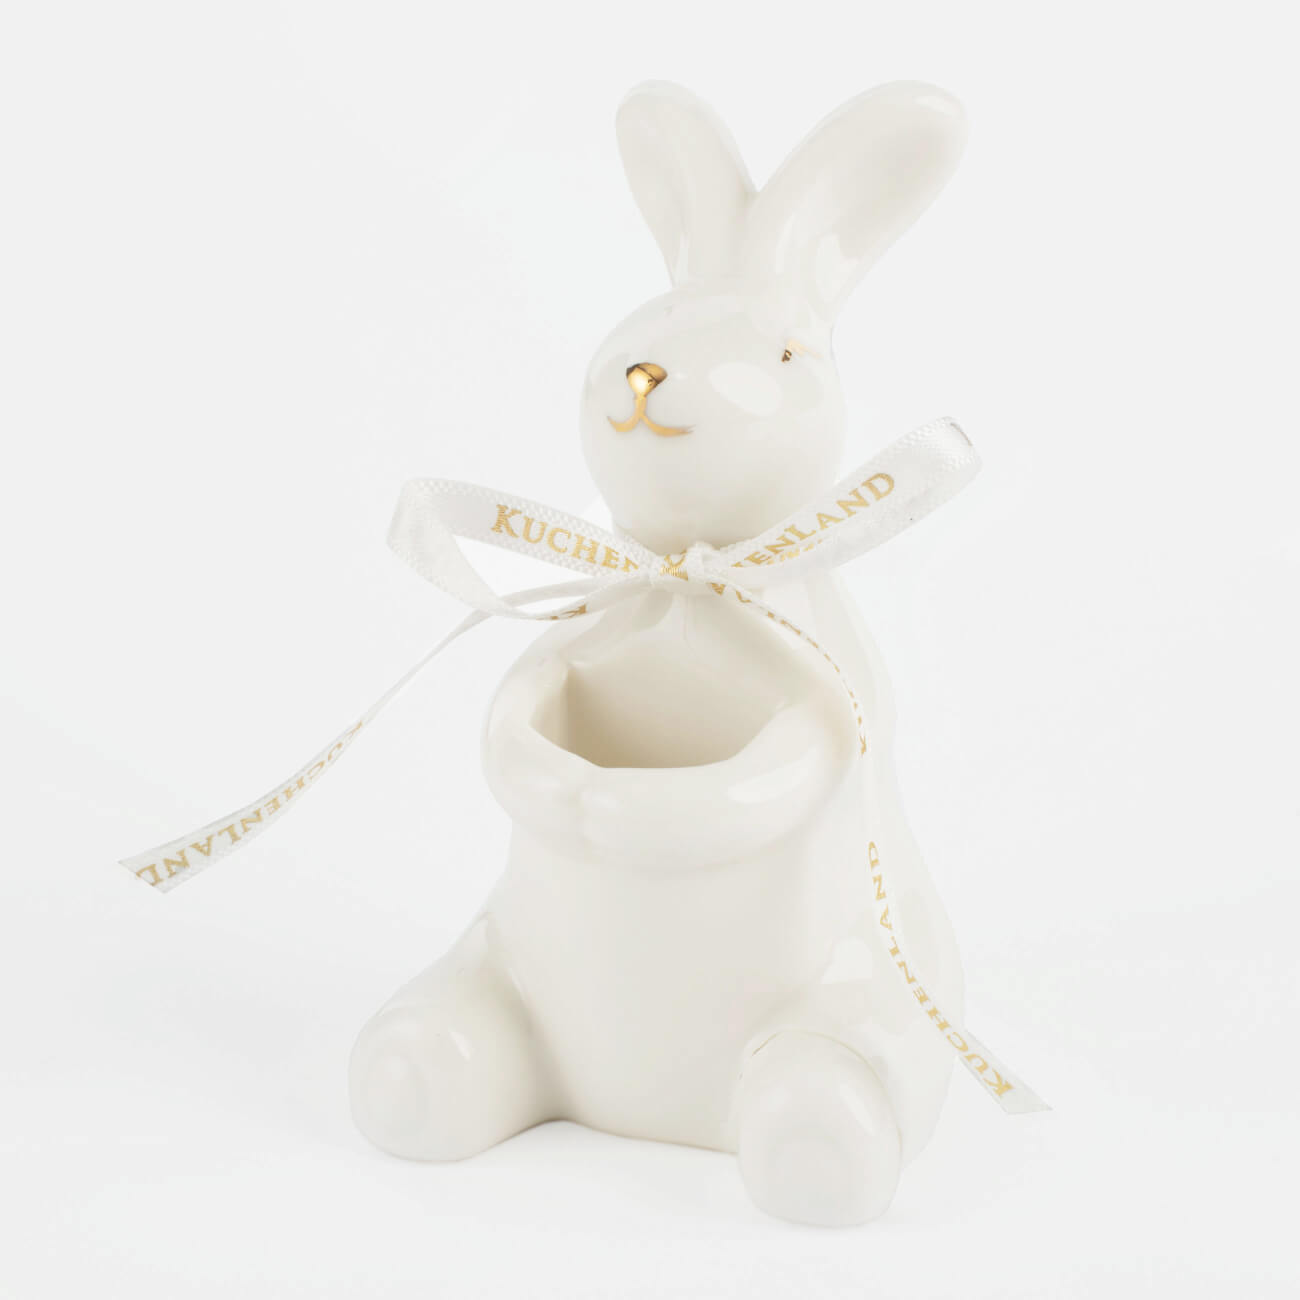 Подставка для зубочисток, 10 см, фарфор P, бело-золотистая, Кролик, Easter gold подставка для зубочисток bogacho